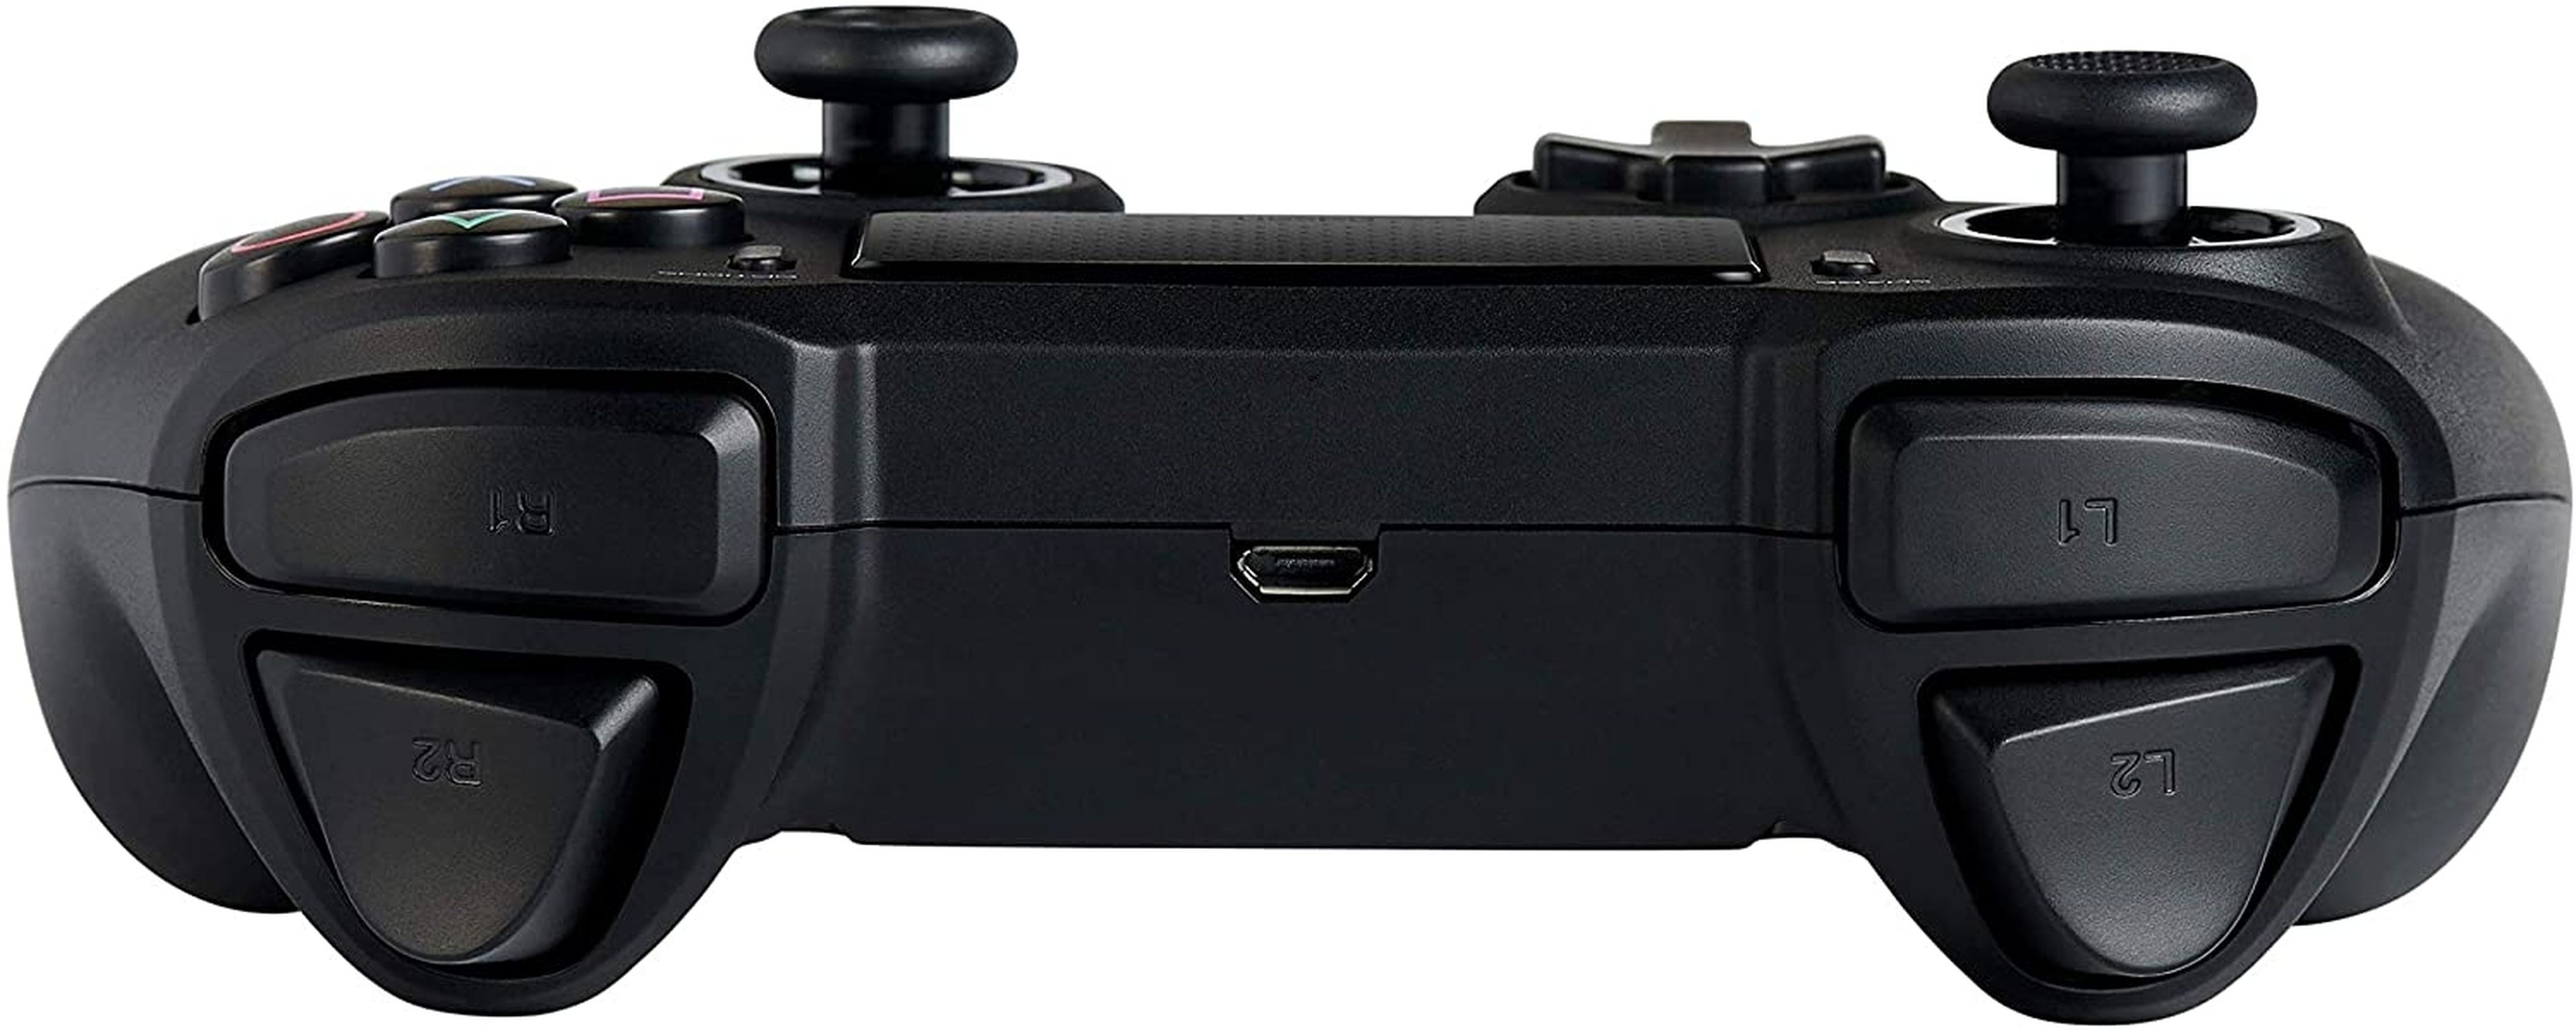 Si eres fan de PlayStation pero también de los mandos asimétricos, aquí  tienes un mando asimétrico para PS4 y PC por menos de 30 euros